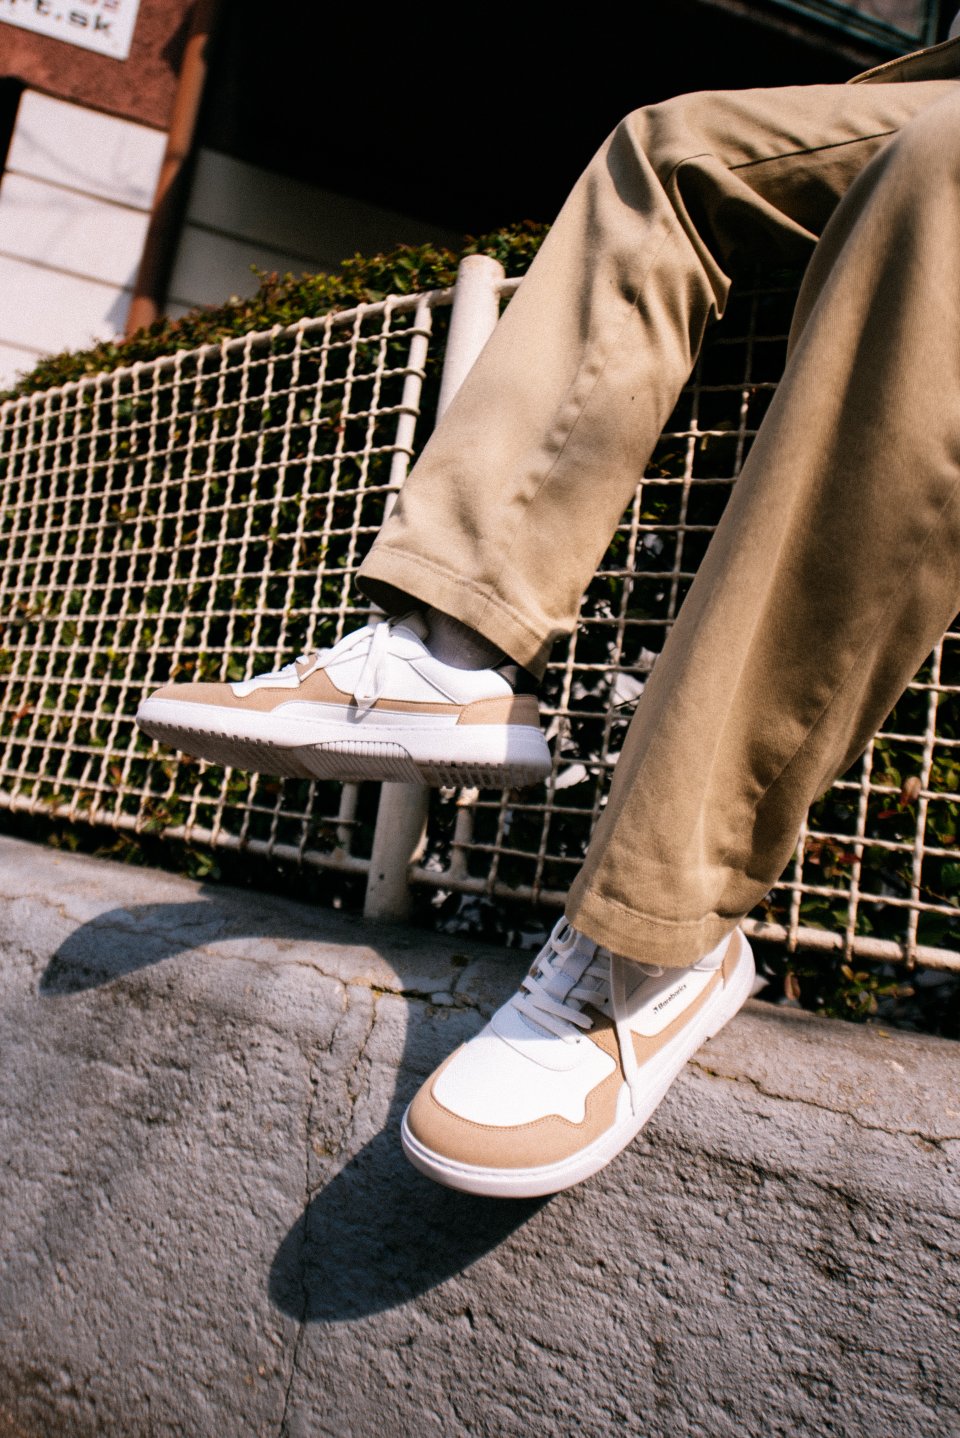 Barefoot Sneakers Barebarics - Zing - White & Beige